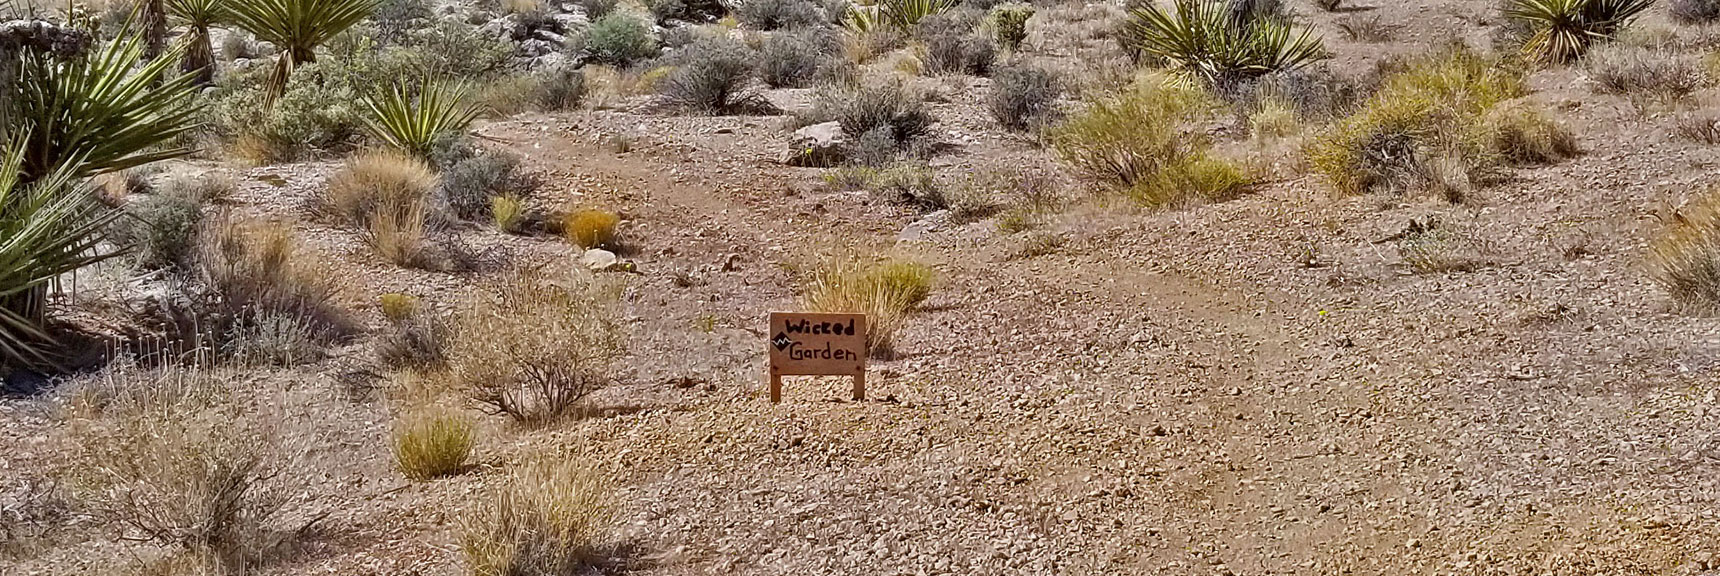 Entering the "Wicked Gardens" Trail Area | Little La Madre Mt, Little El Padre Mt, Little Burnt Peak | Near La Madre Mountains Wilderness, Nevada